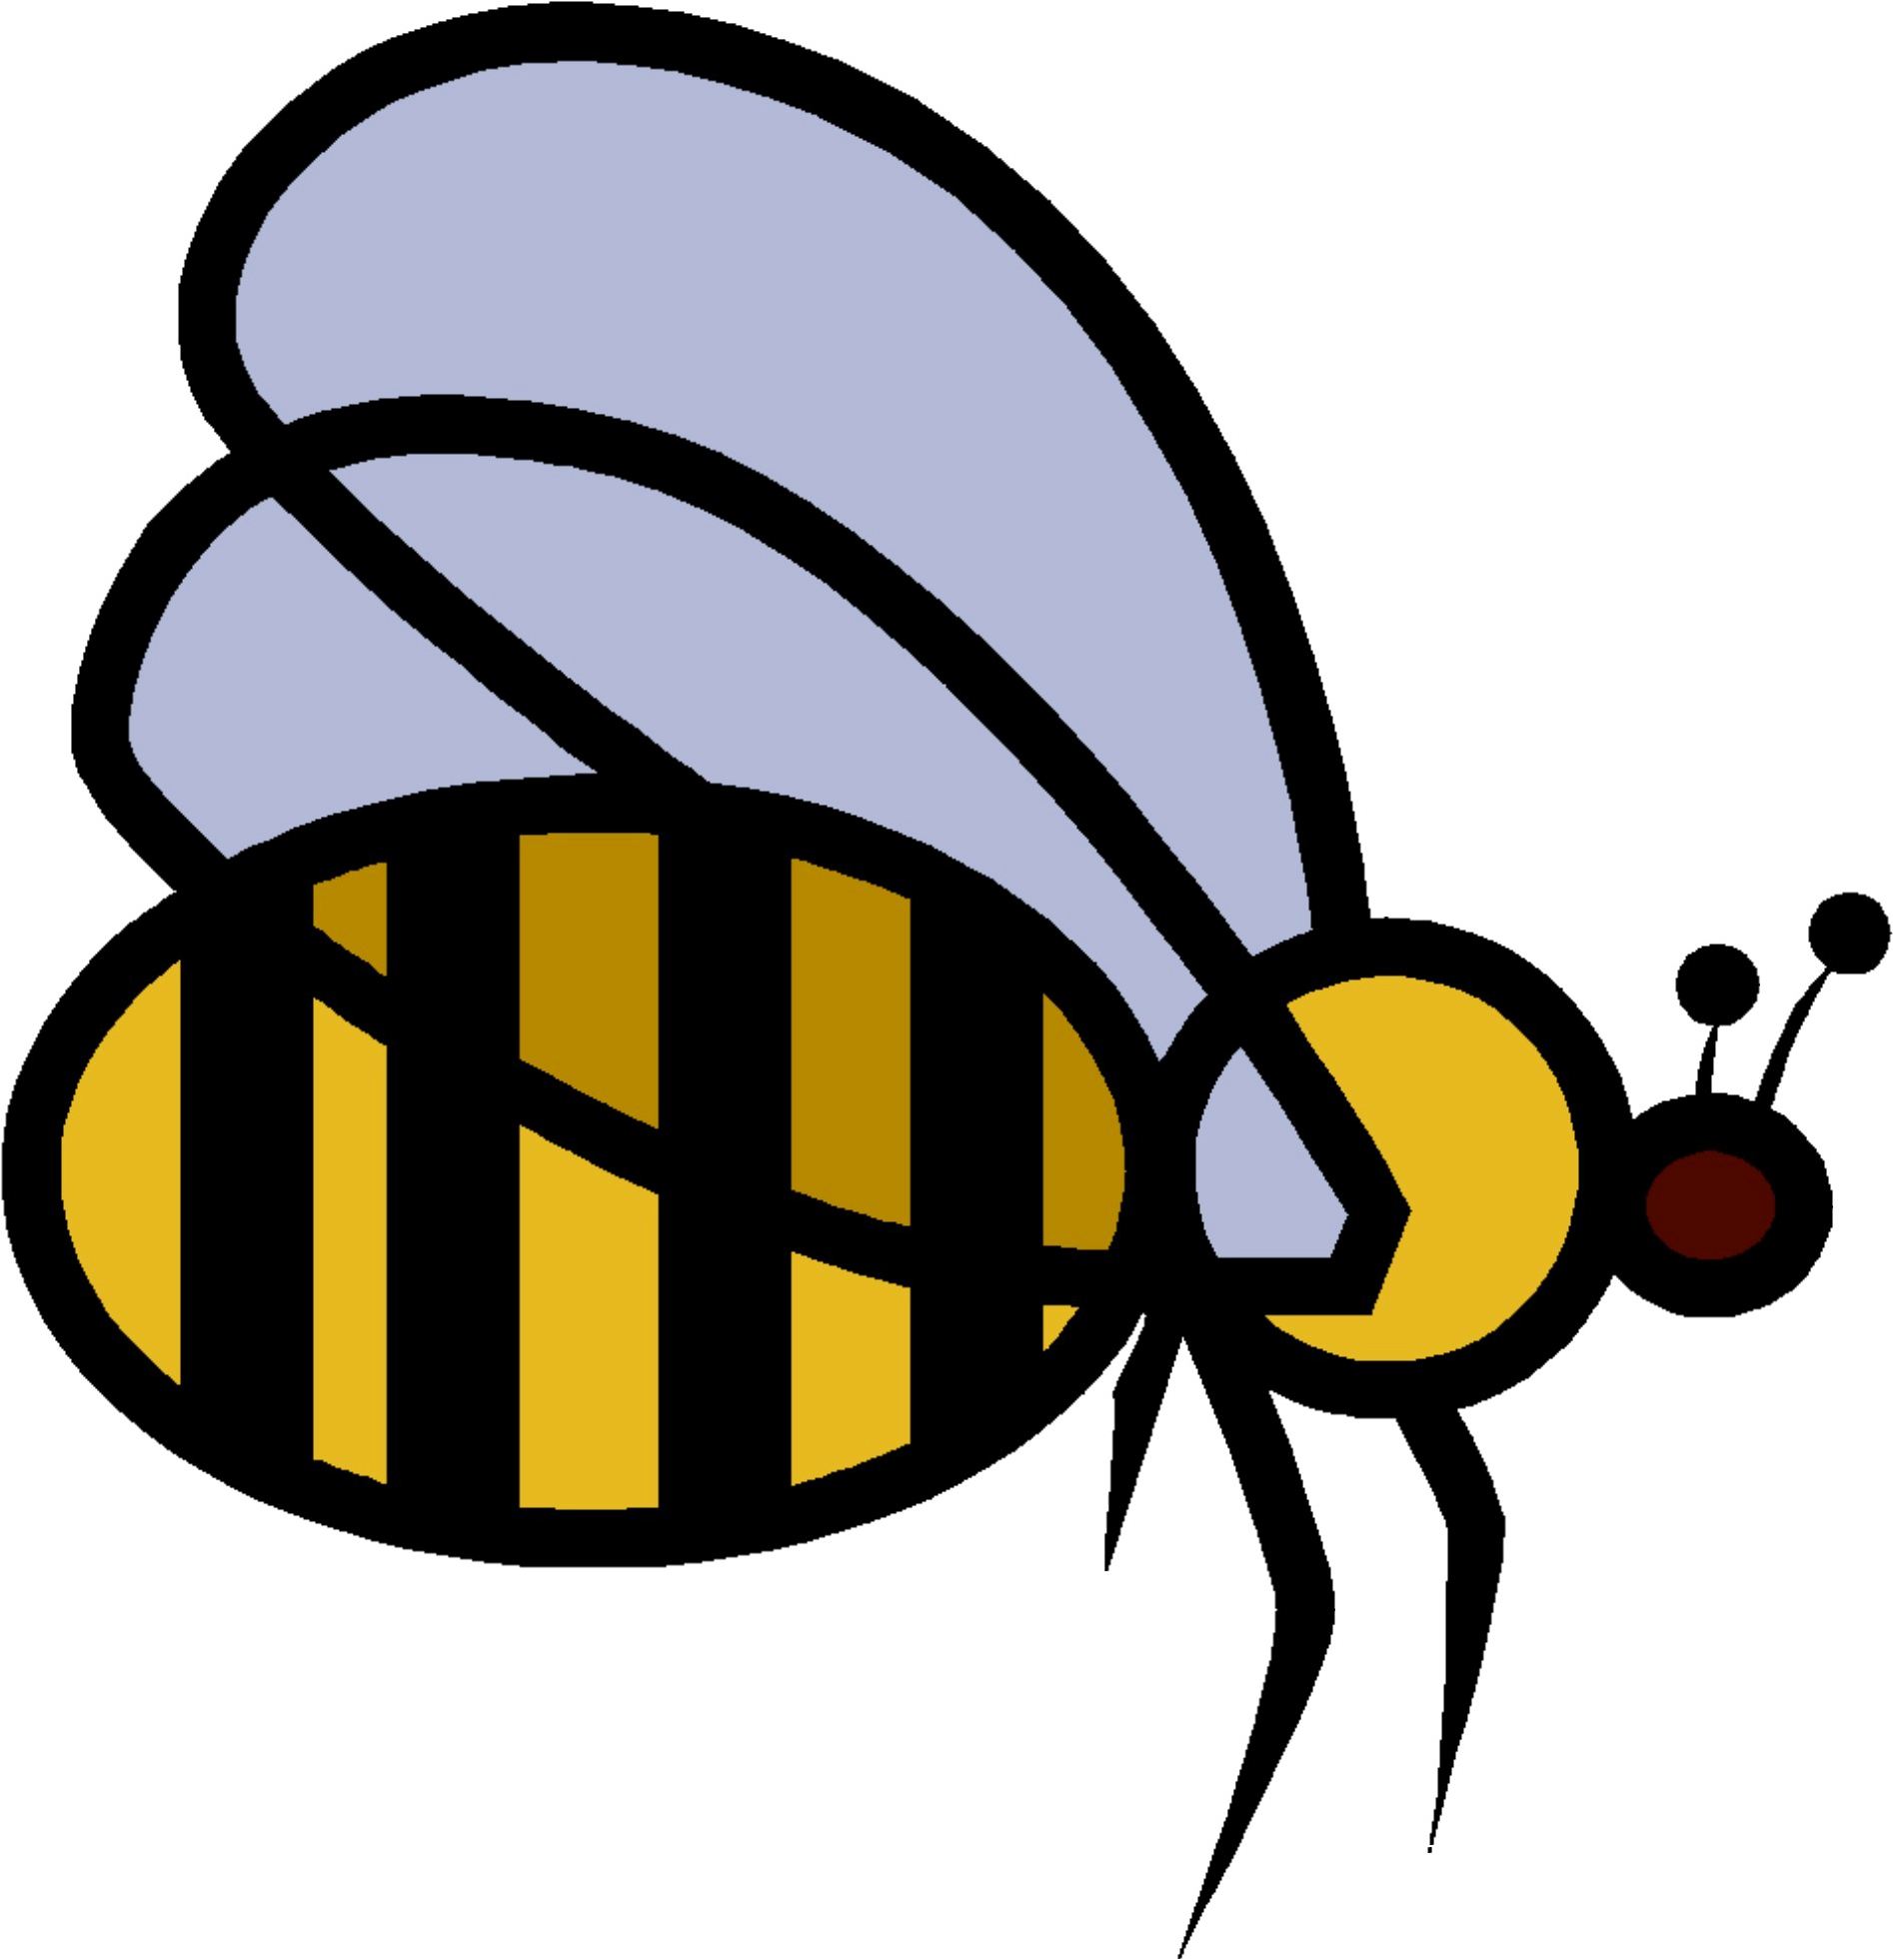 Good Riddance Pest Control - Honeybee (1893x2035)